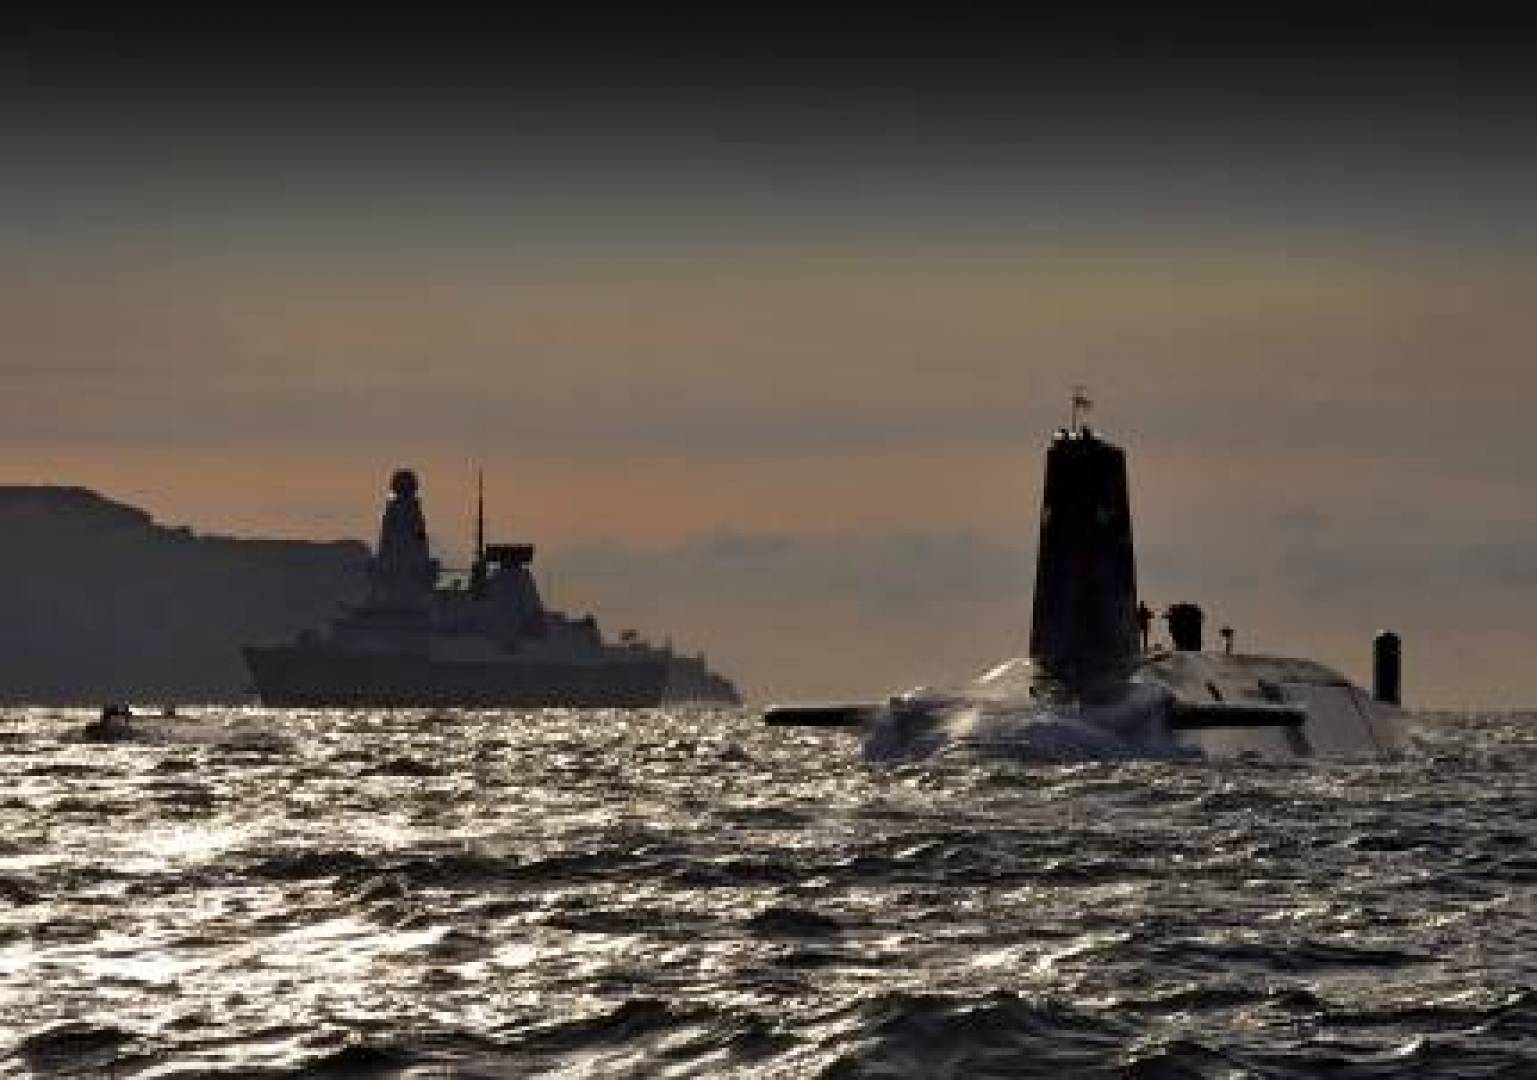 بريطانيا تعيد غواصة نووية استراتيجية لبحريتها بعد الصيانة والتعديل